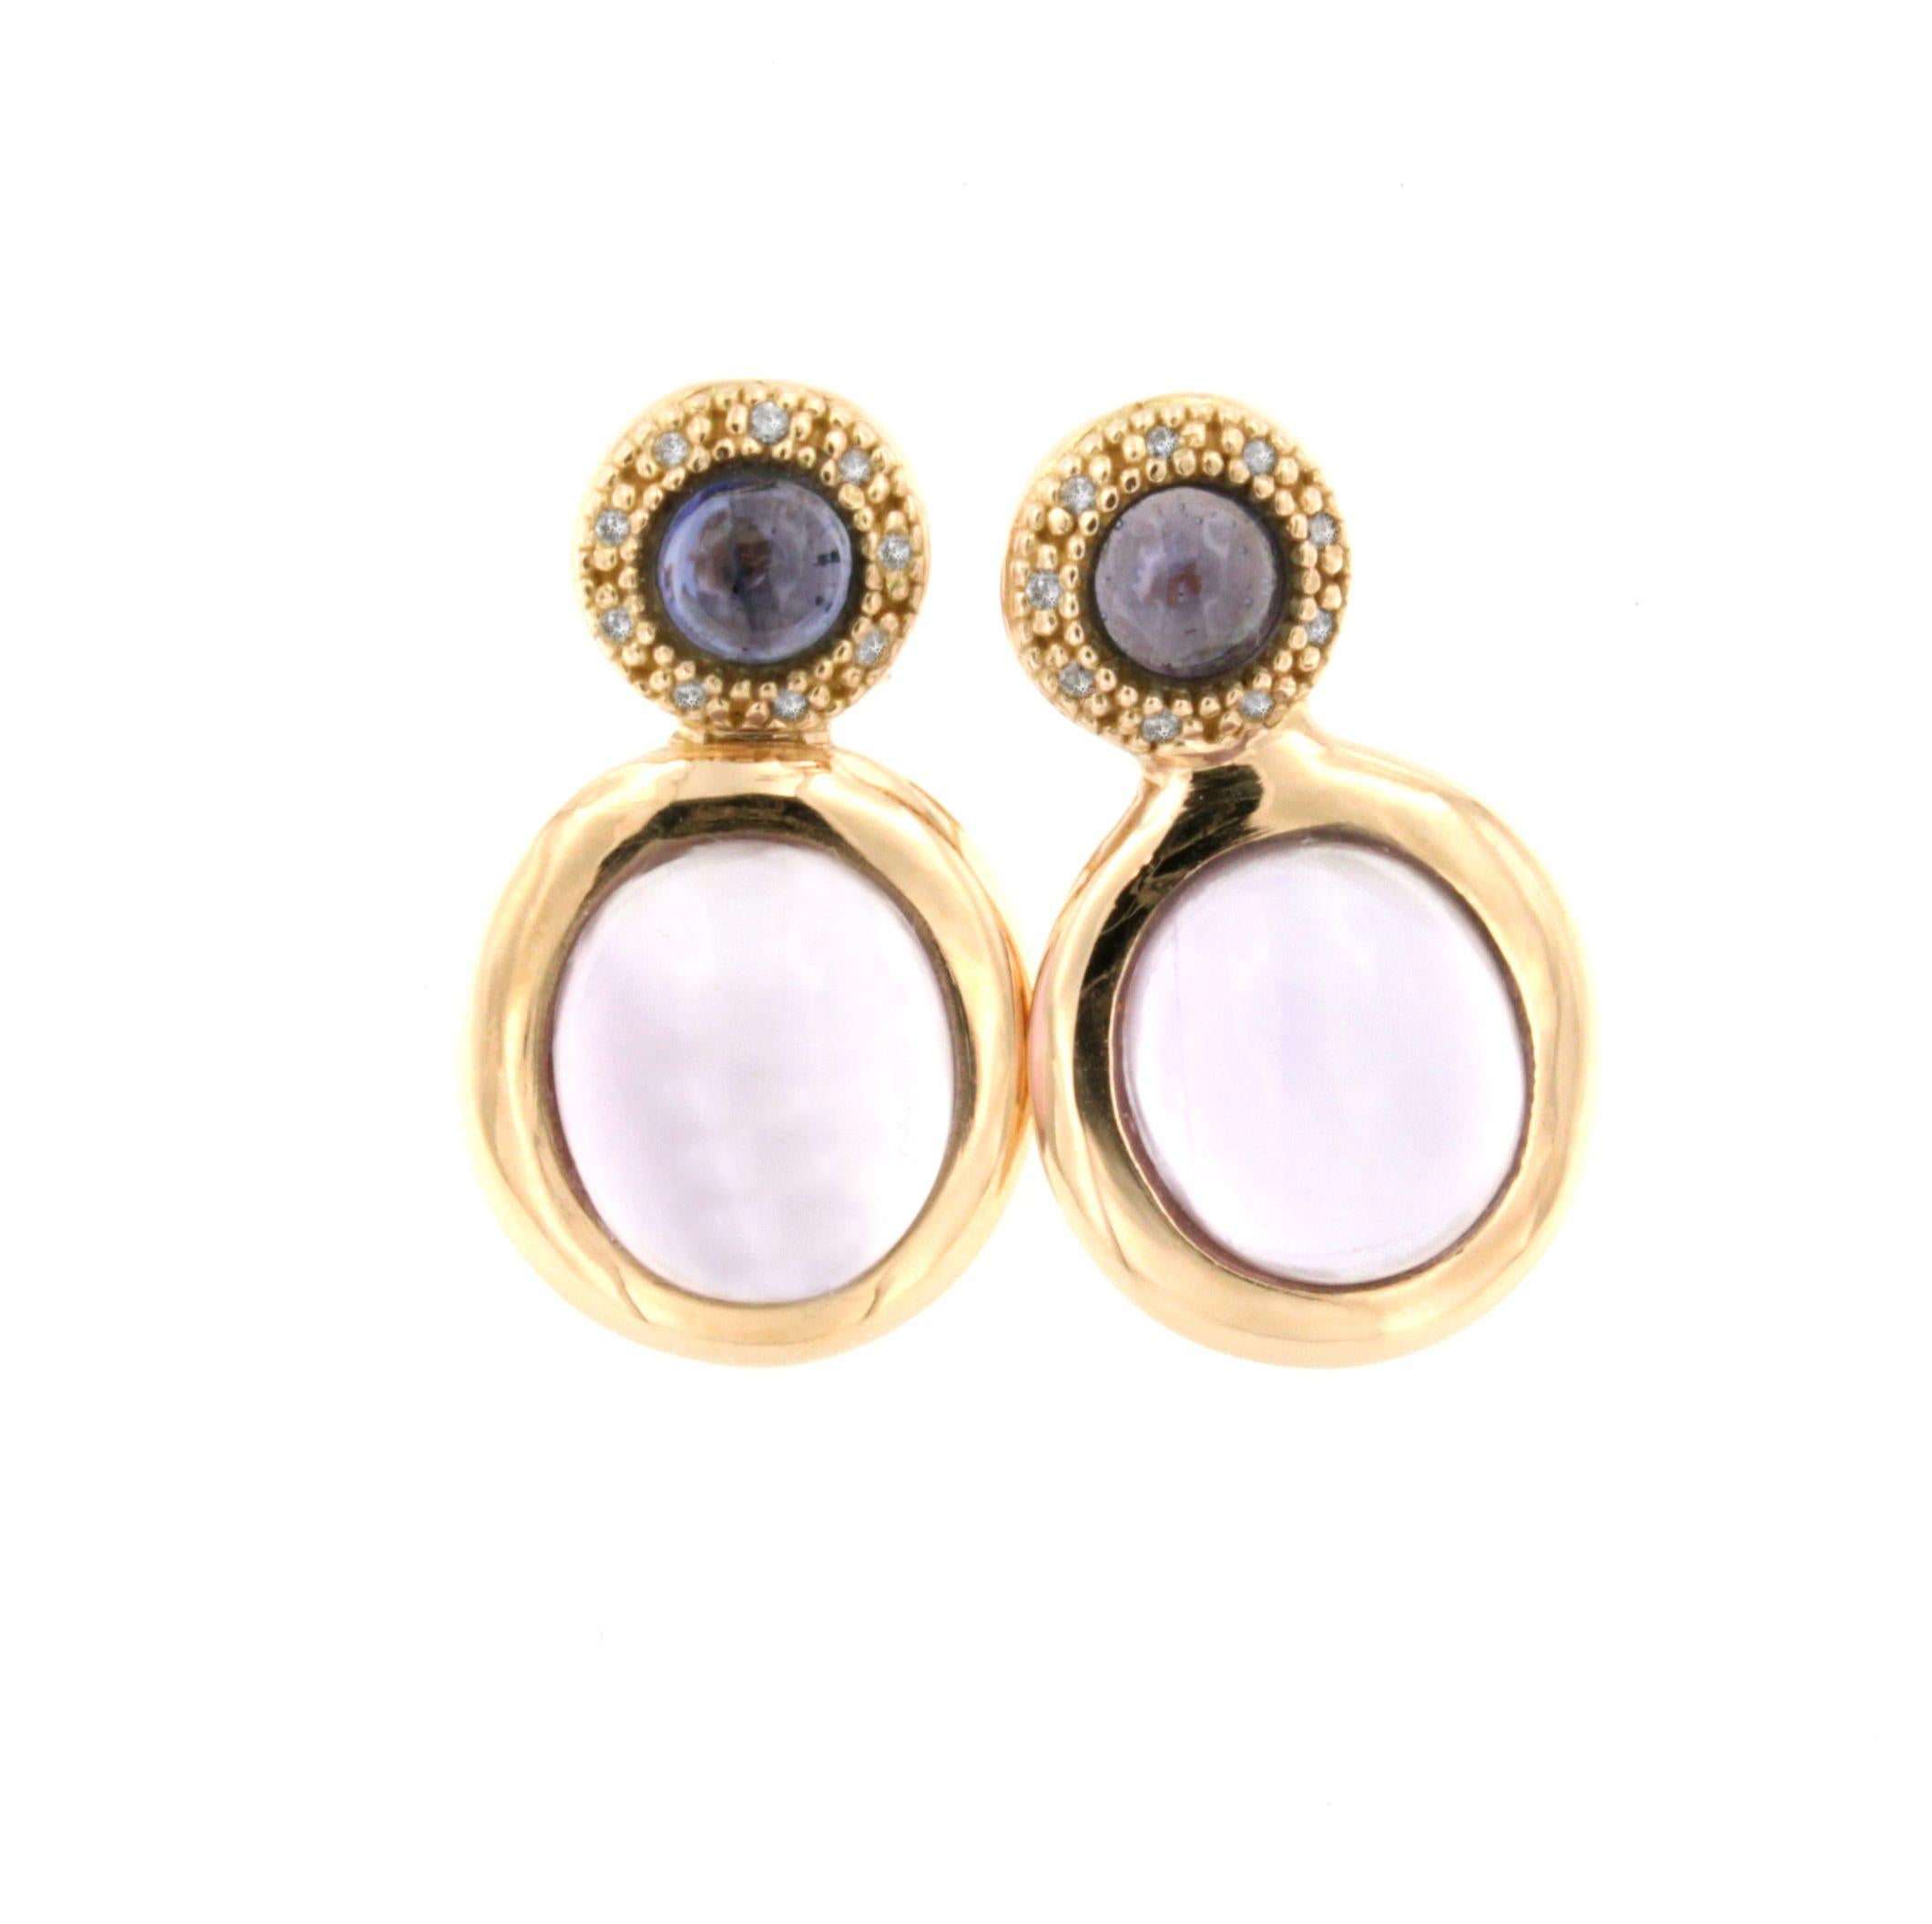 Boucles d'oreilles Fashion en or rose 18Kt avec améthyste violette, iolite et diamants blancs 